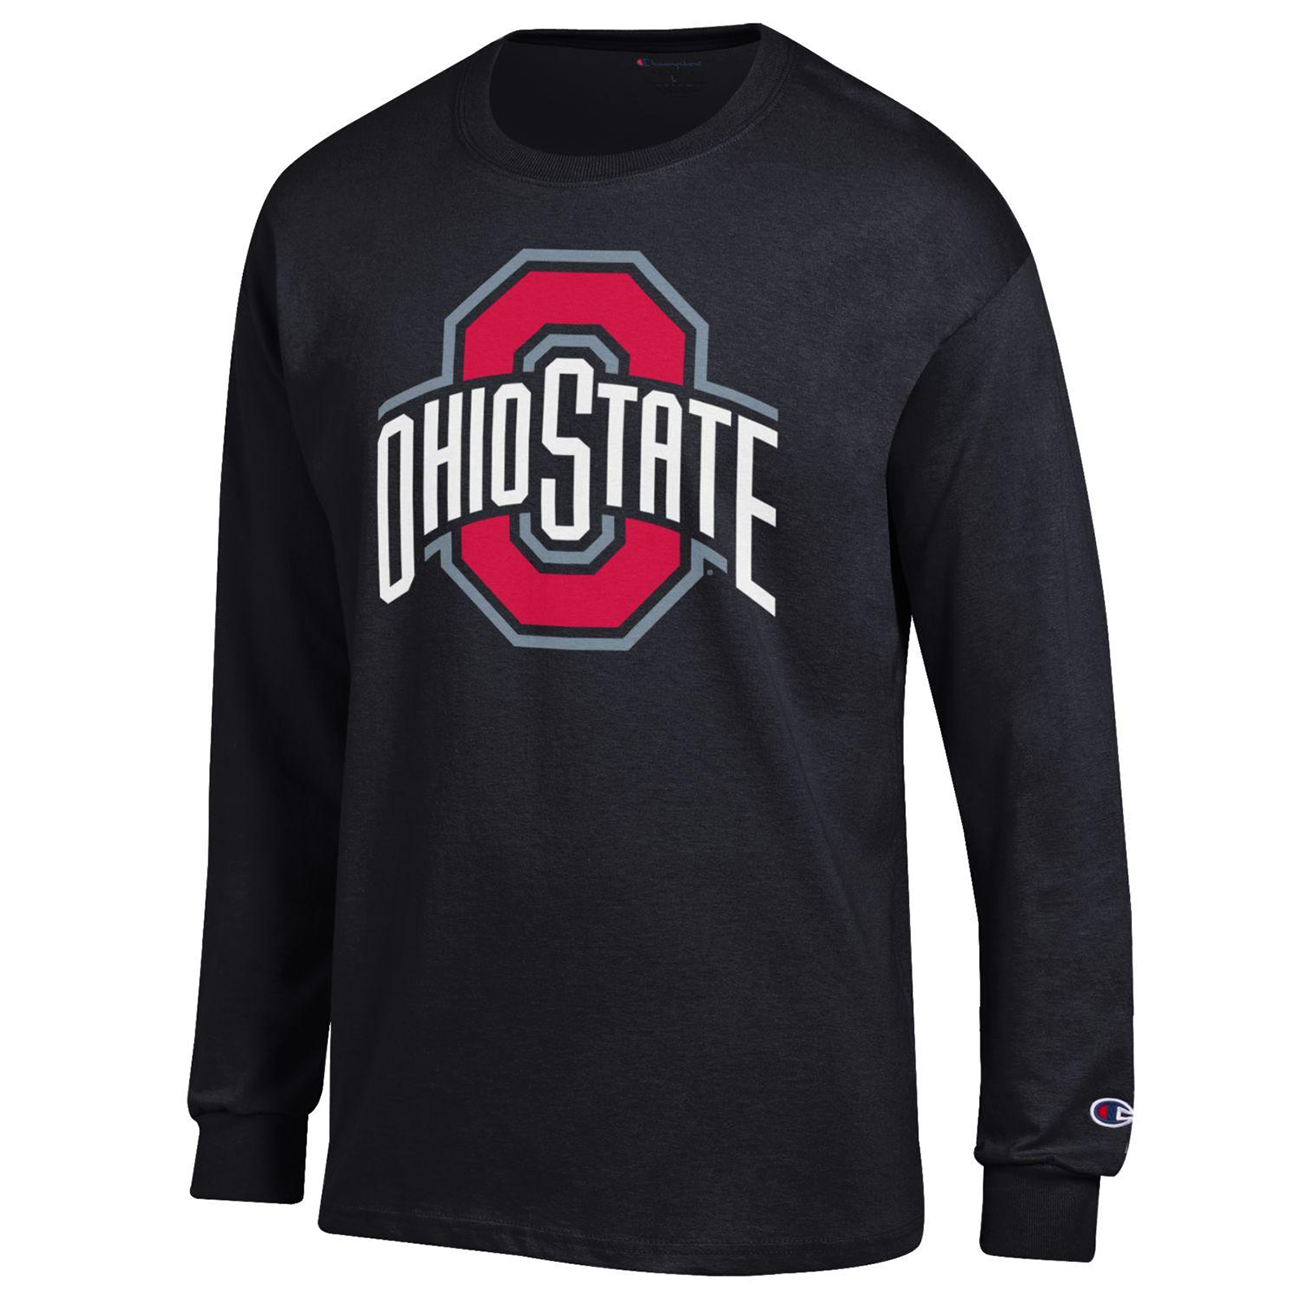 T-Shirt Ohio State Basic Long Sleeve Tee with Large Block O Logo